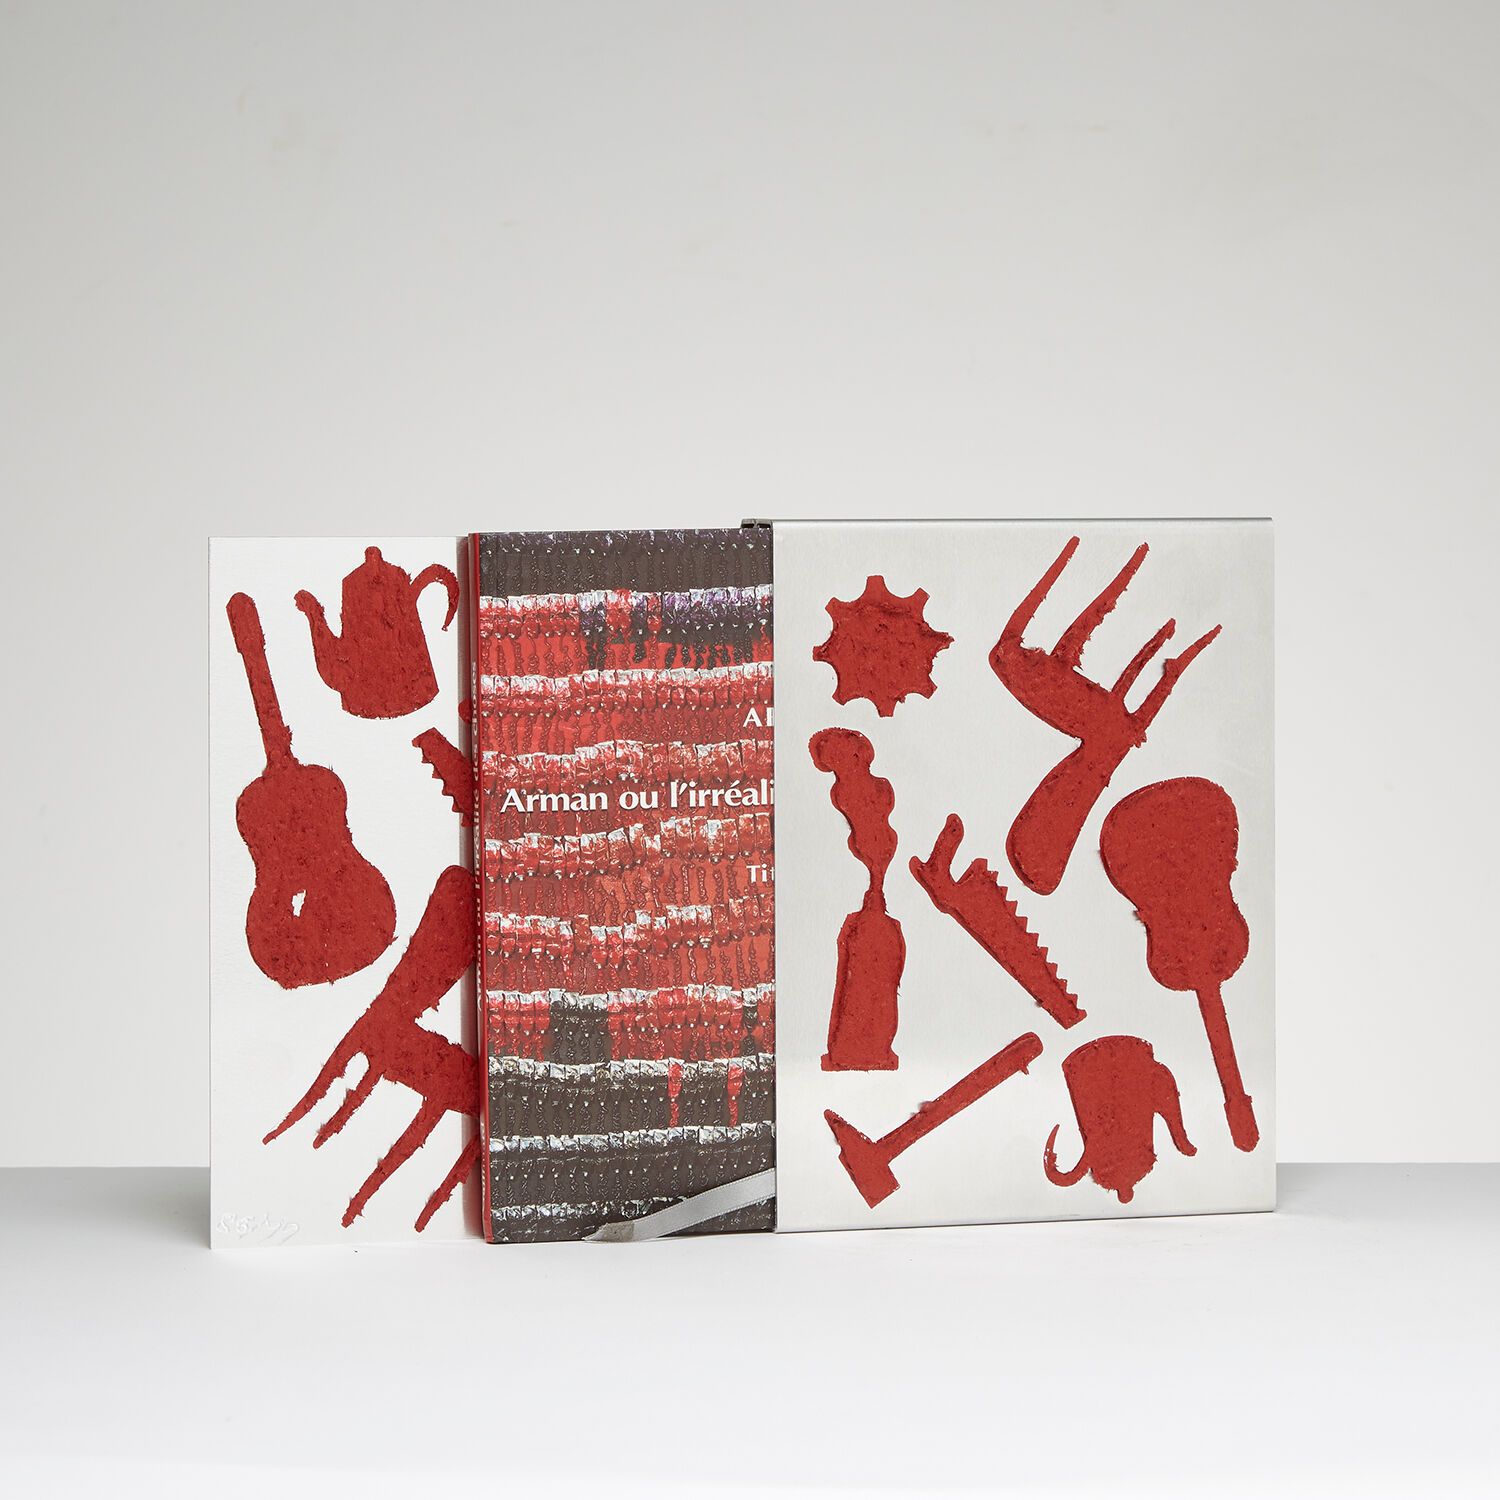 ARMAN (1928-2005) 阿曼（1928-2005）
Arman ou l'irrealite des choses, 2003
杜拉铝板上的红色树脂&hellip;